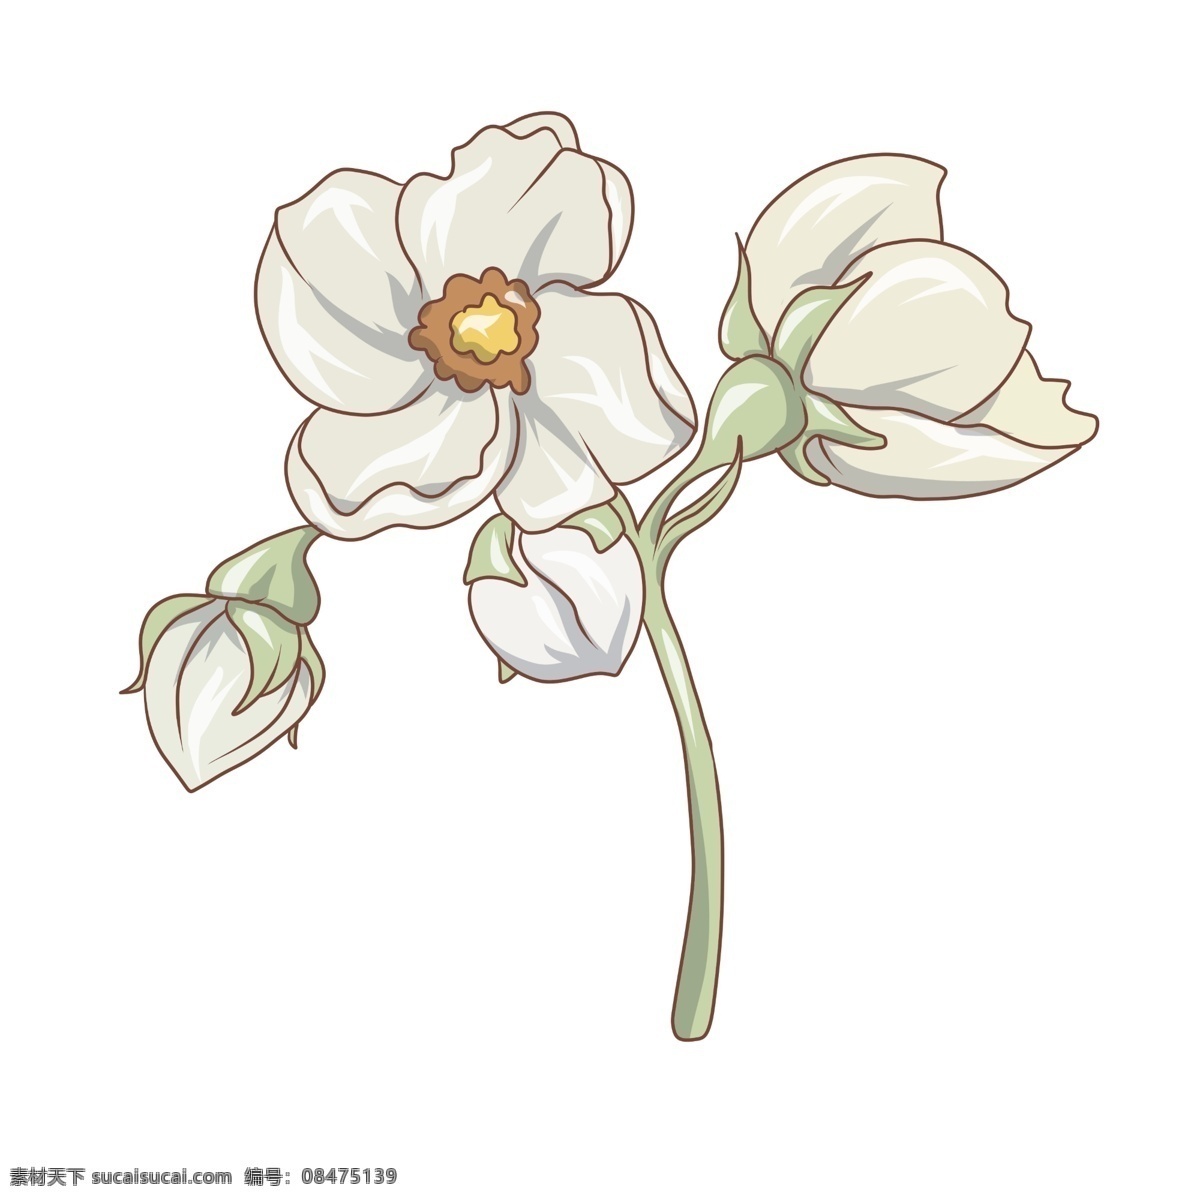 小 清新 白色 唯美 水彩 花卉 花朵 小清新 白色花卉 水彩花卉 水彩花朵 白色花朵 清新花朵 插画 鲜花